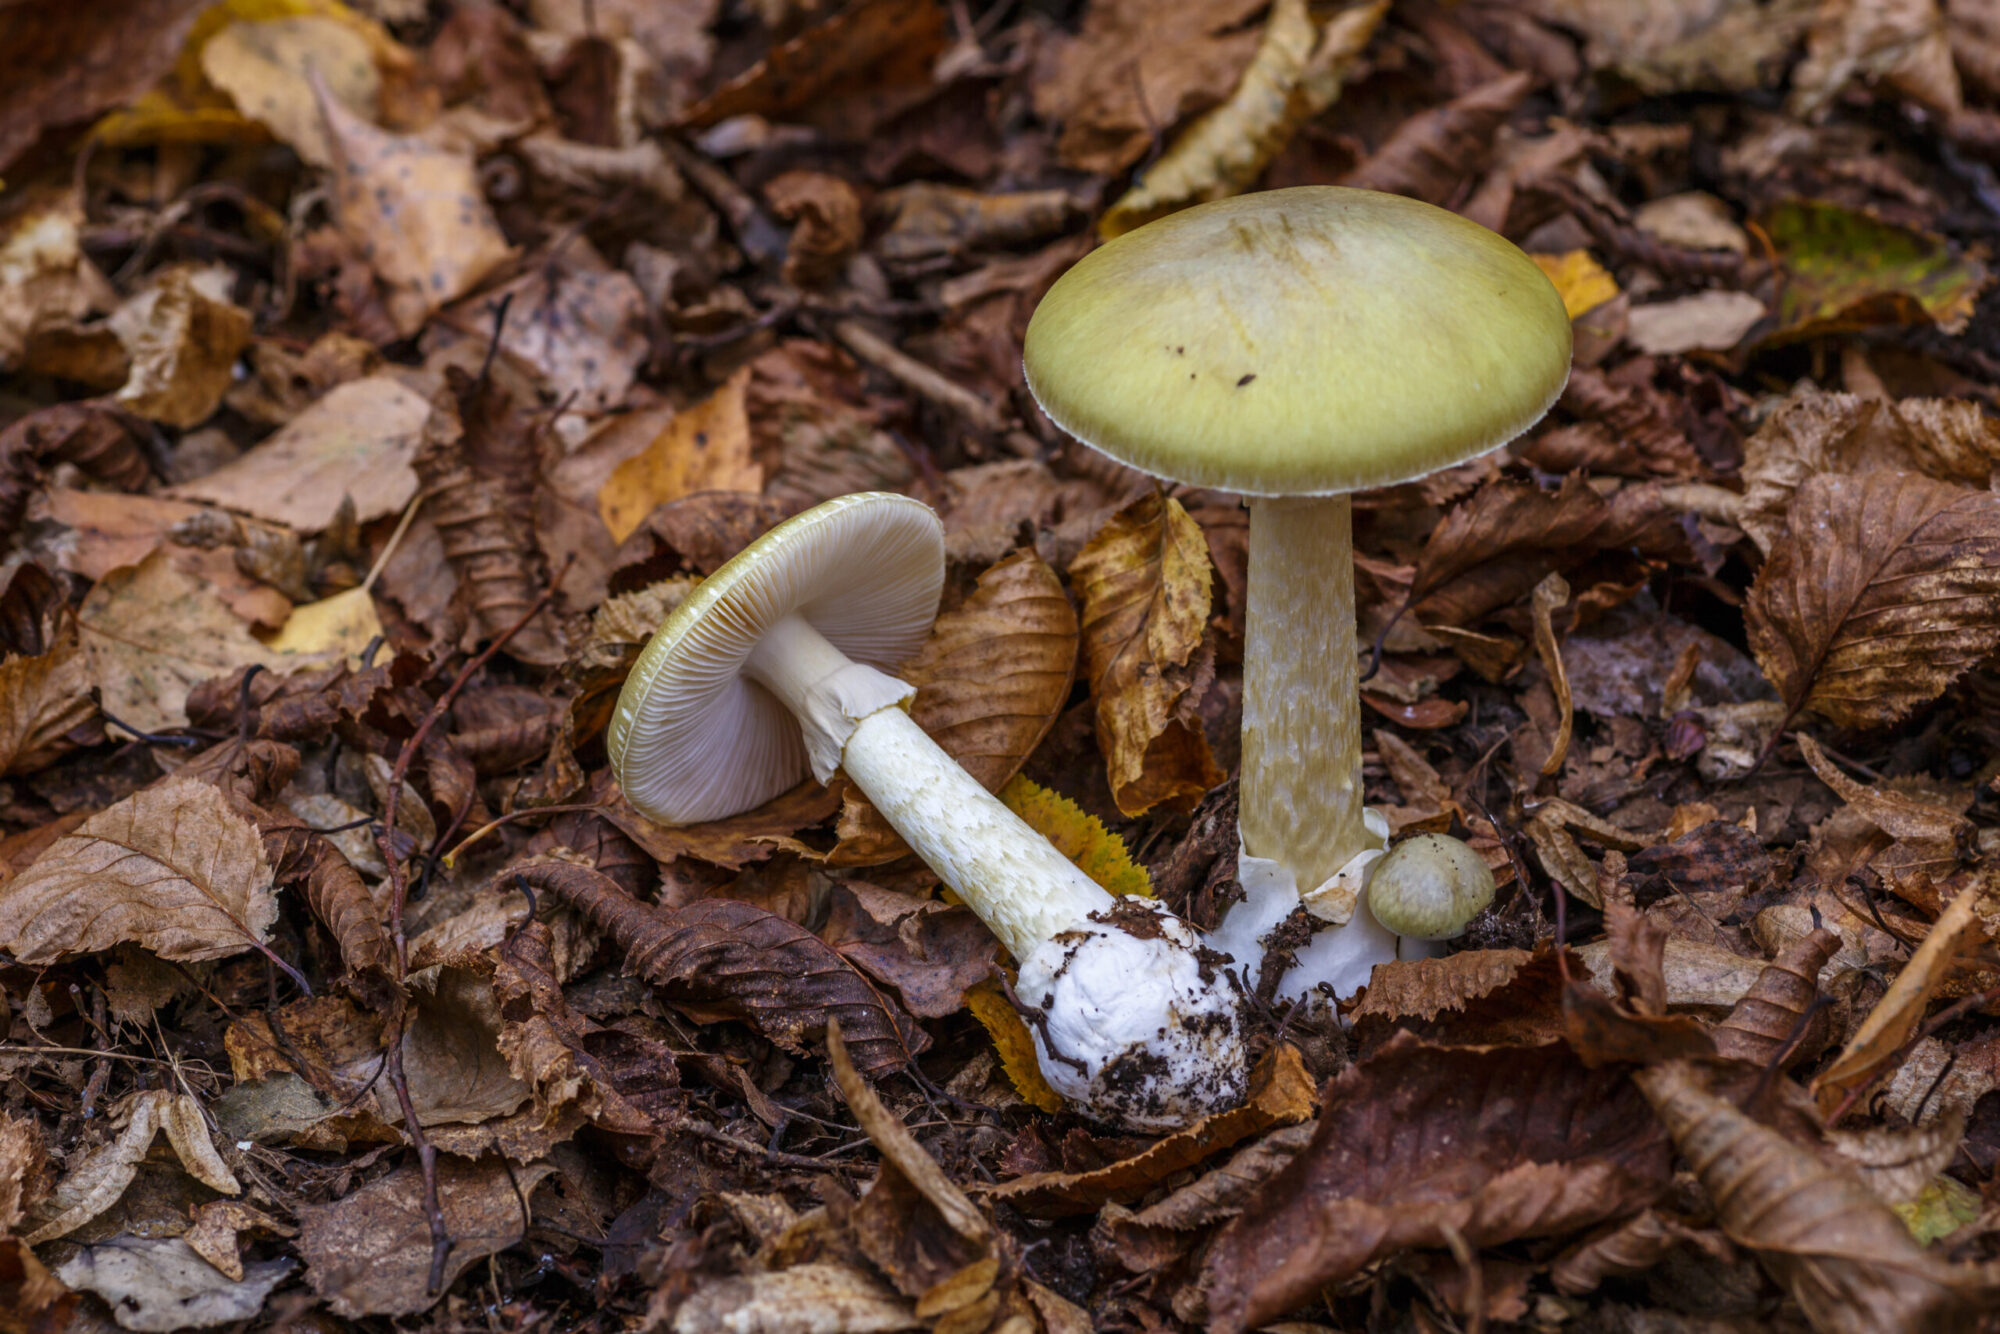 death cap poisonous mushroom